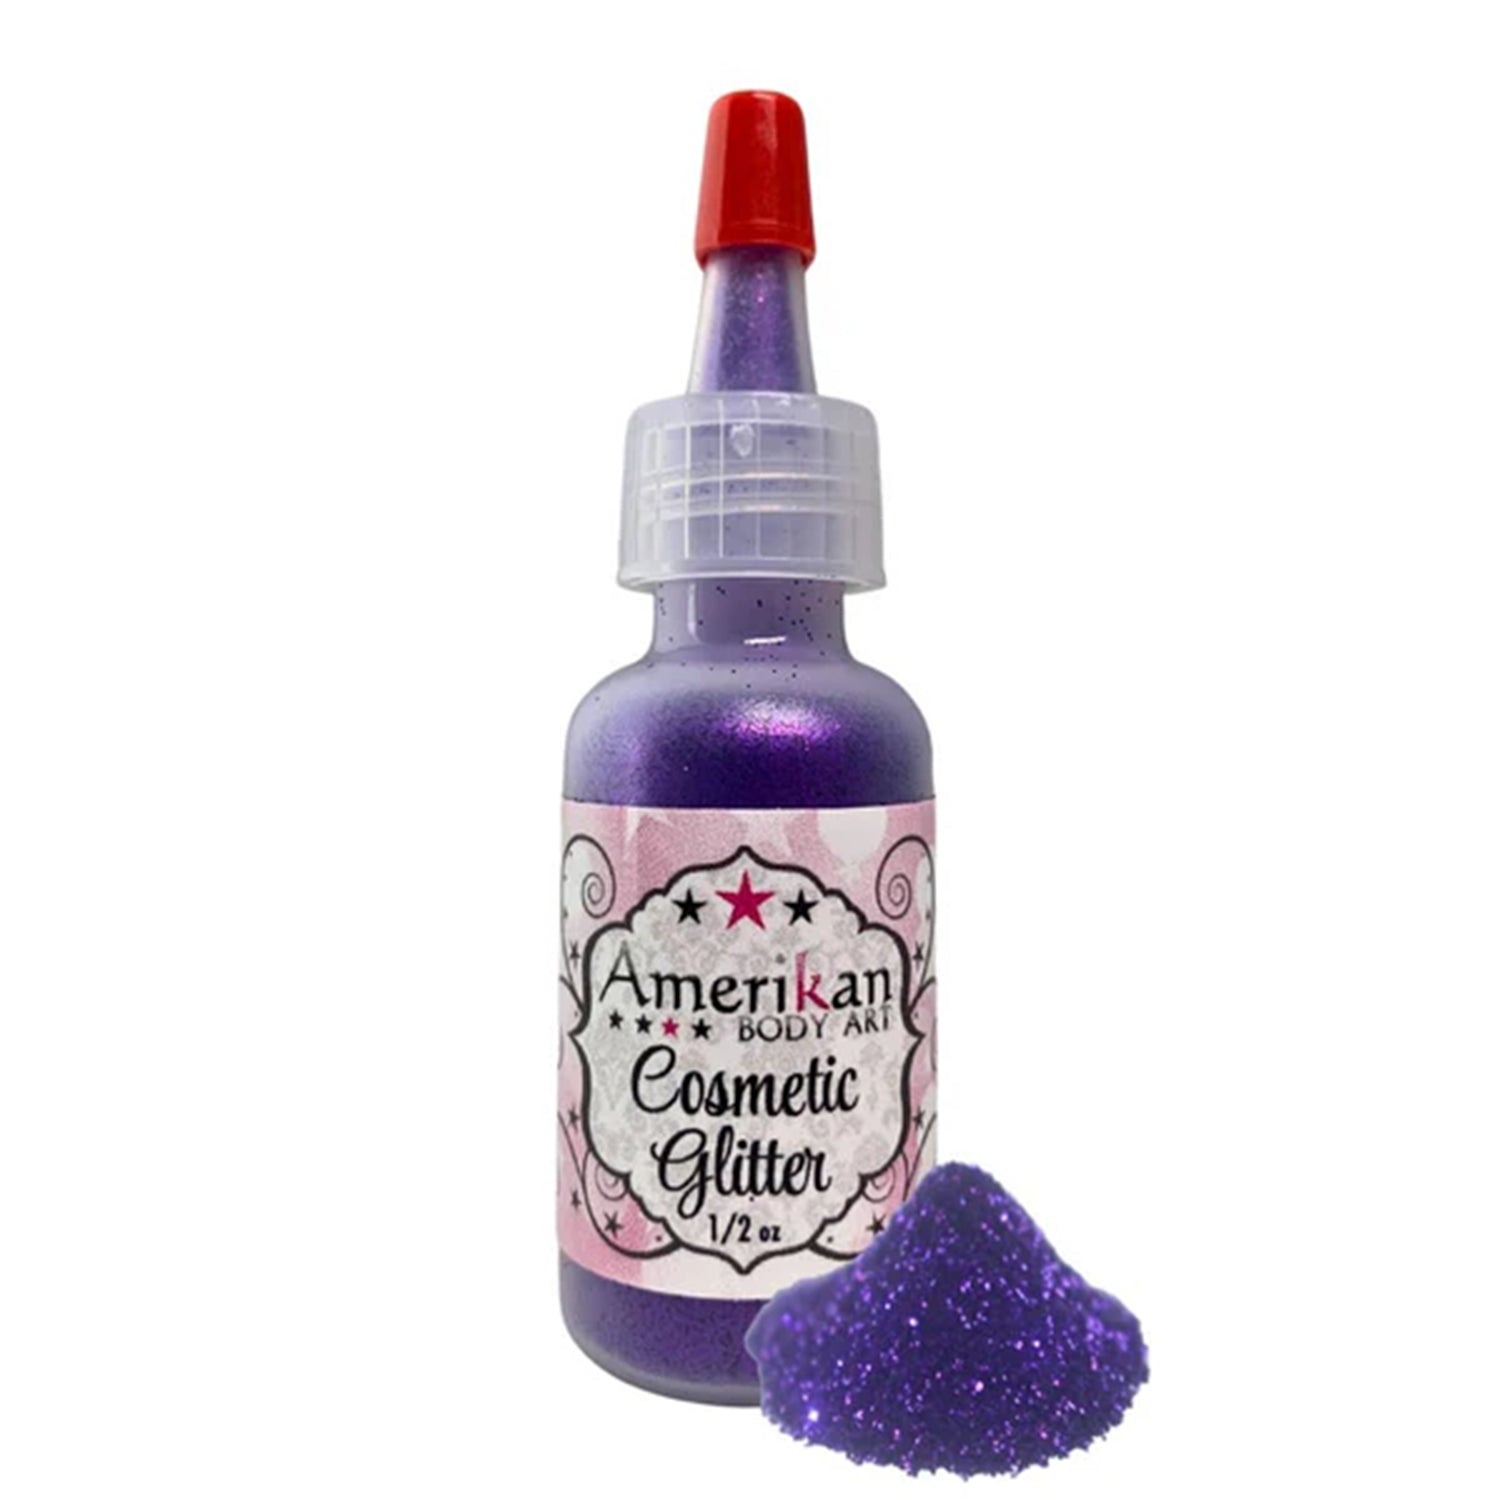 Amerikan Body Art Opaque Glitter - Grape Soda (0.5 oz)